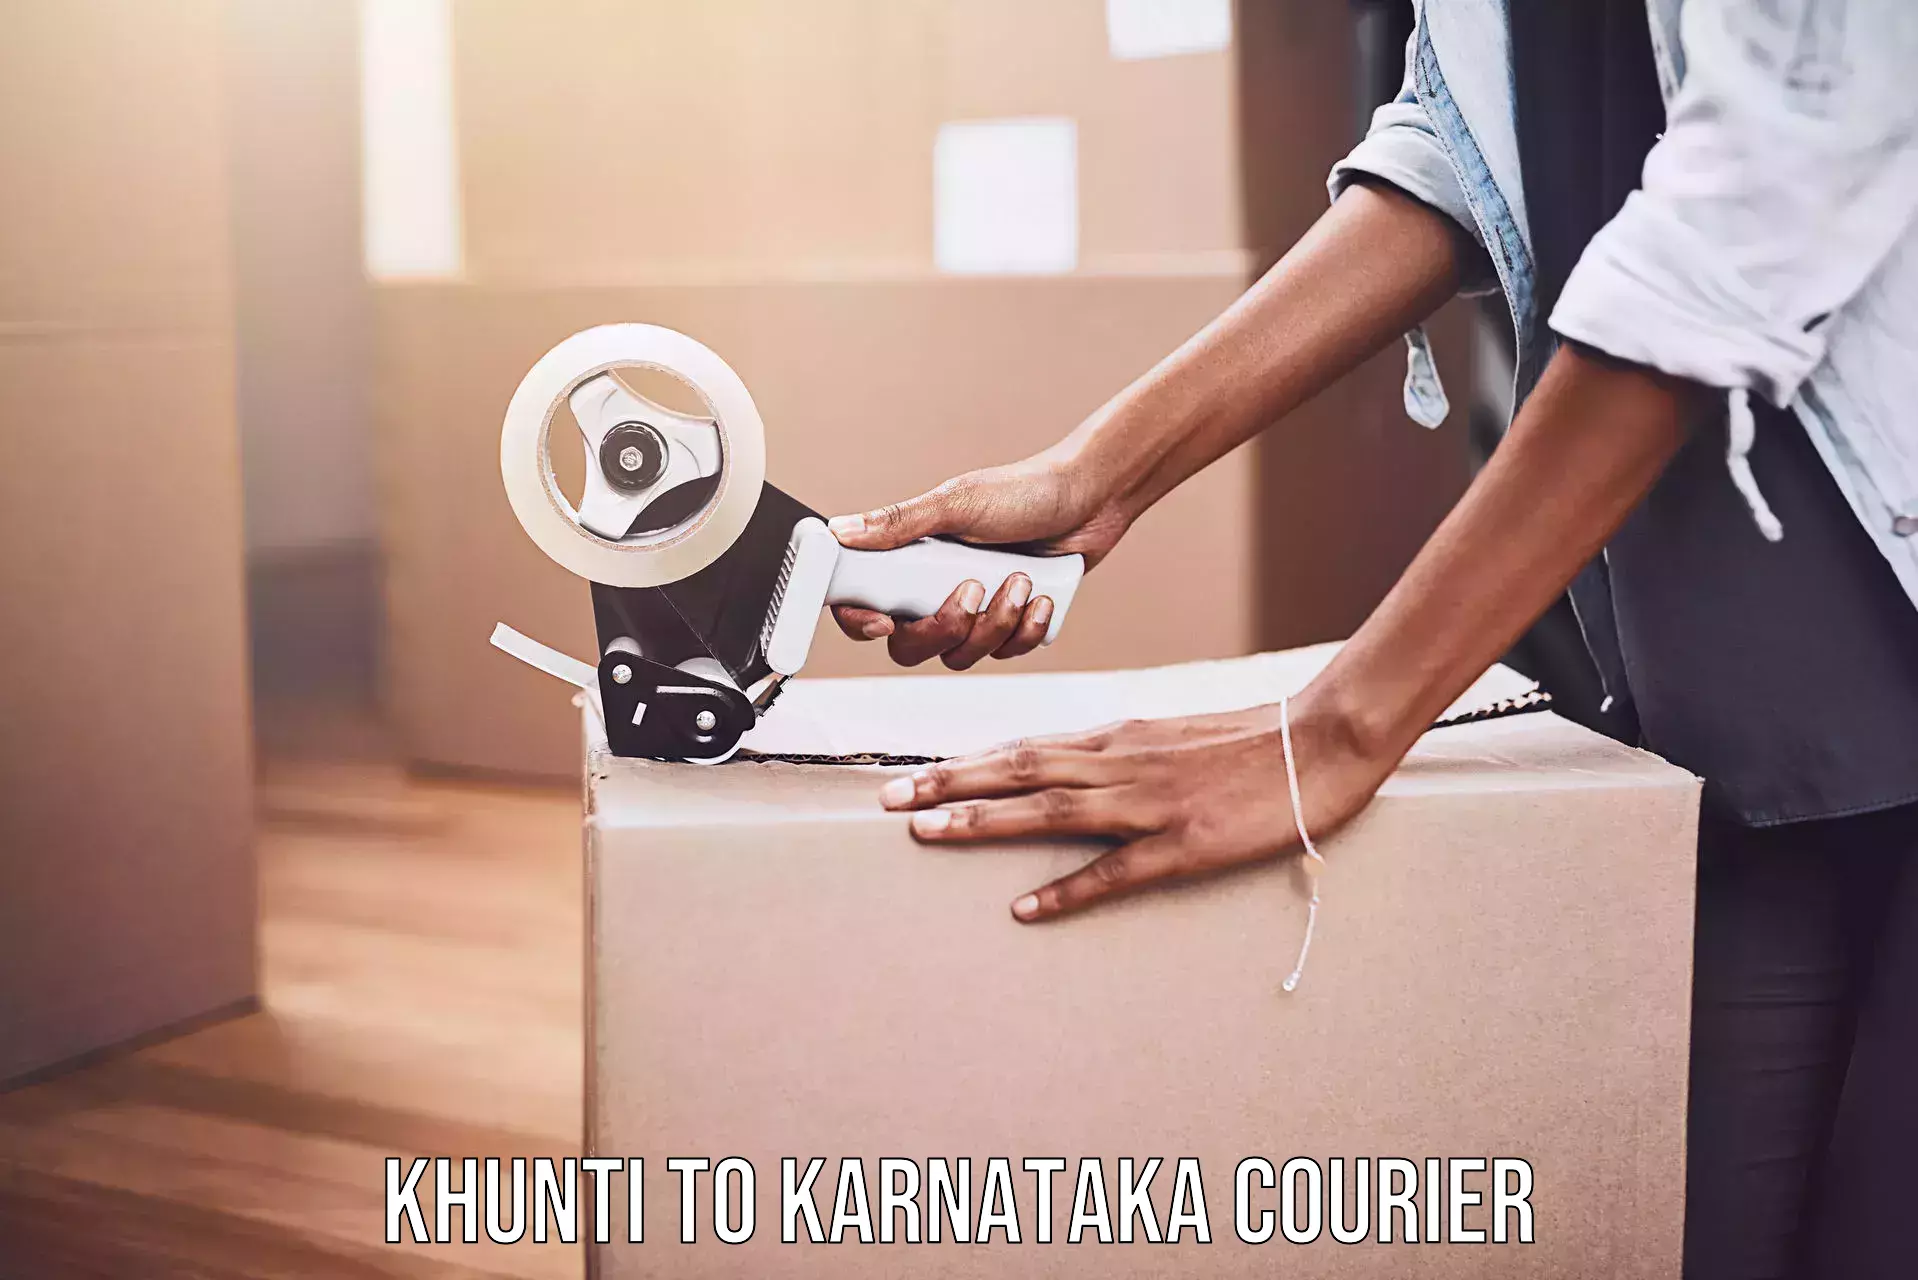 Express courier facilities Khunti to Karnataka